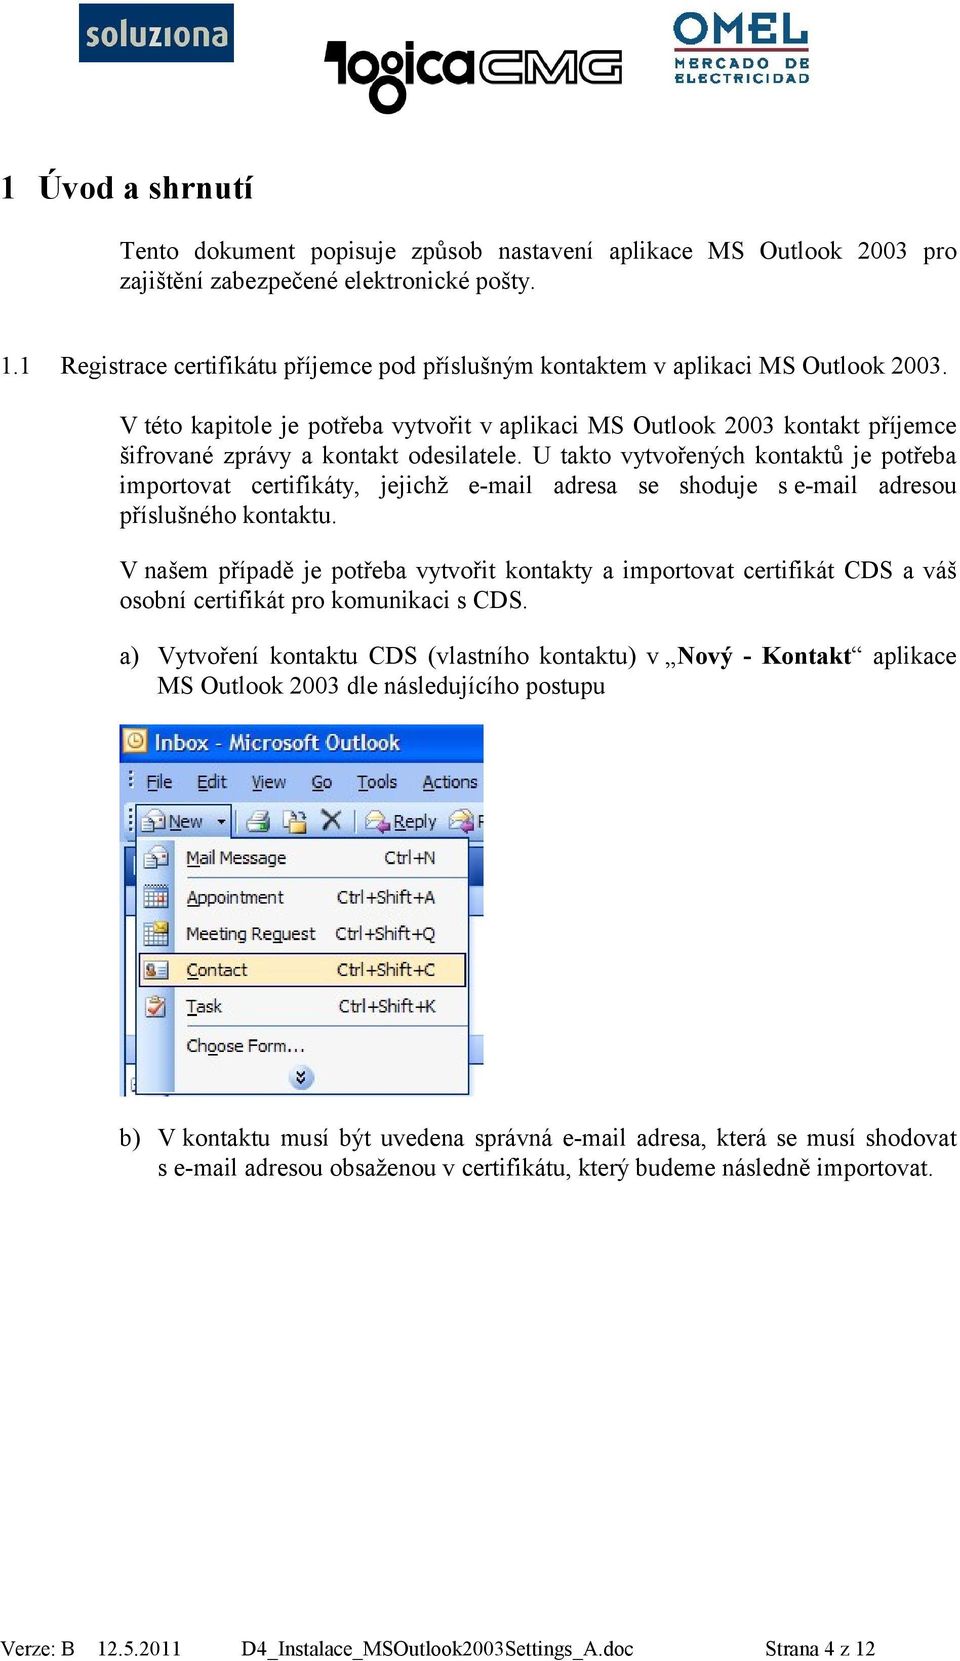 V této kapitole je potřeba vytvořit v aplikaci MS Outlook 2003 kontakt příjemce šifrované zprávy a kontakt odesilatele.